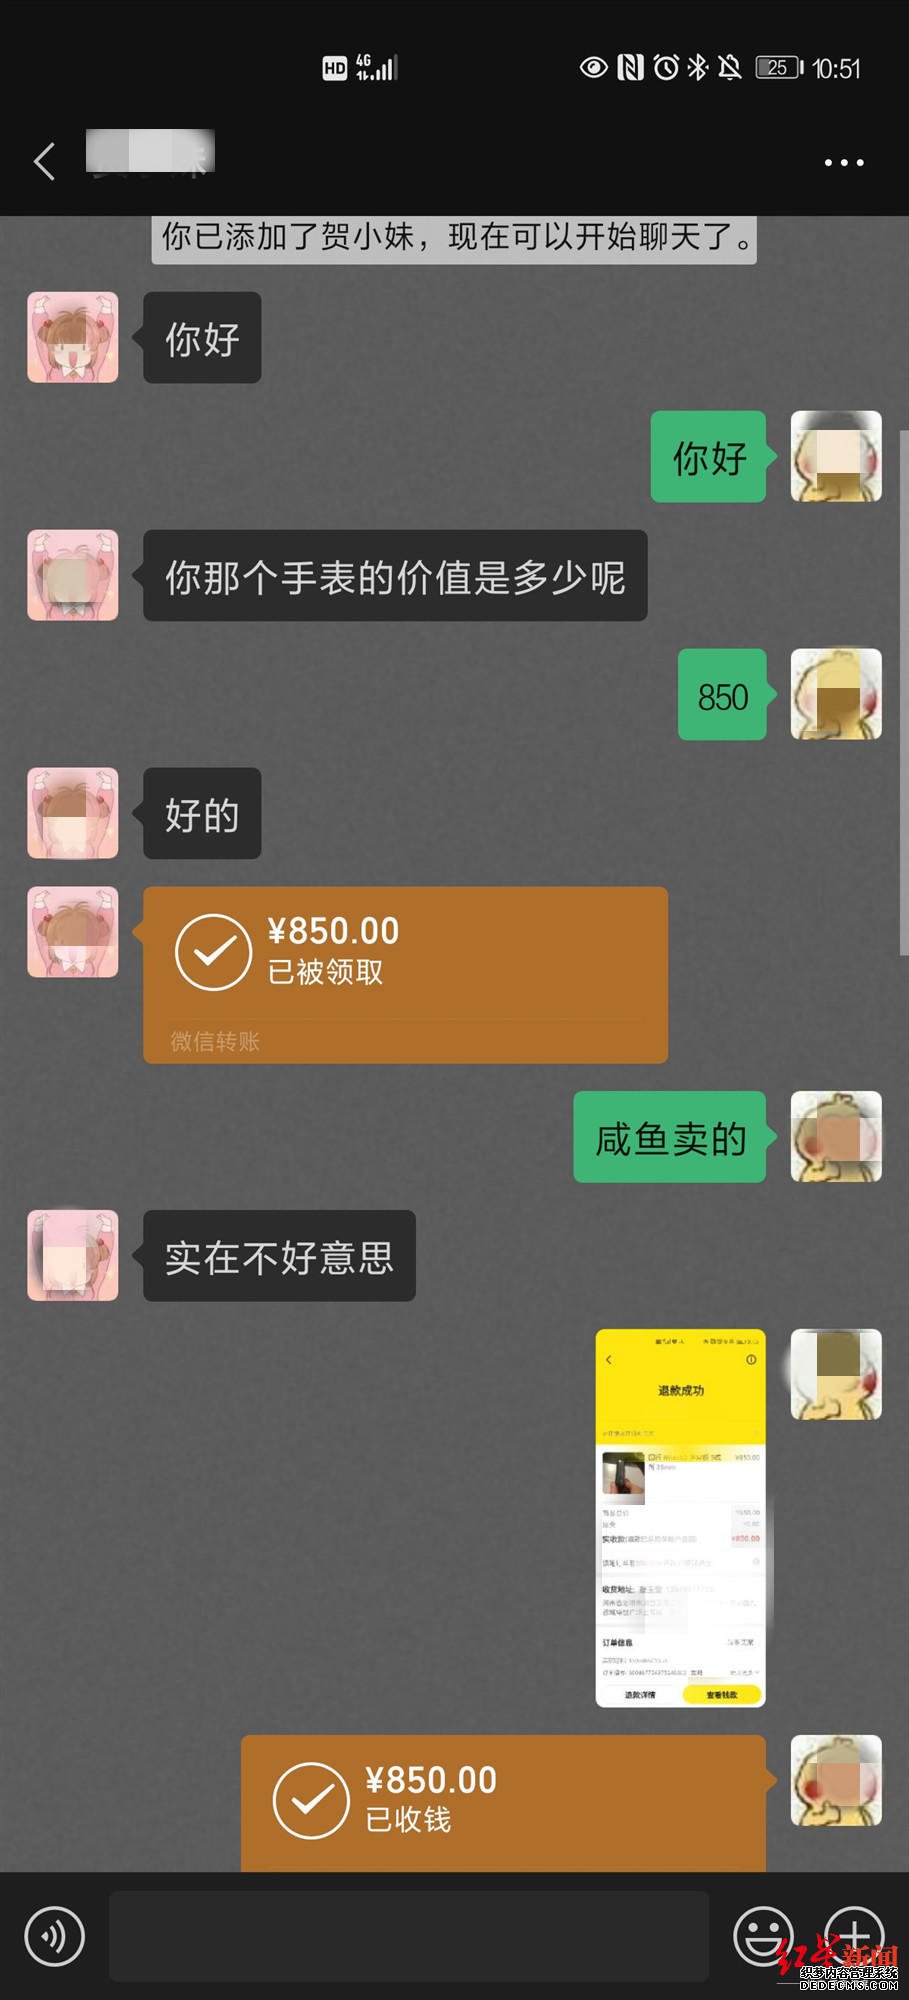 韵达客服通过微信转账方式将850元转给了黄先生，图据受访者提供